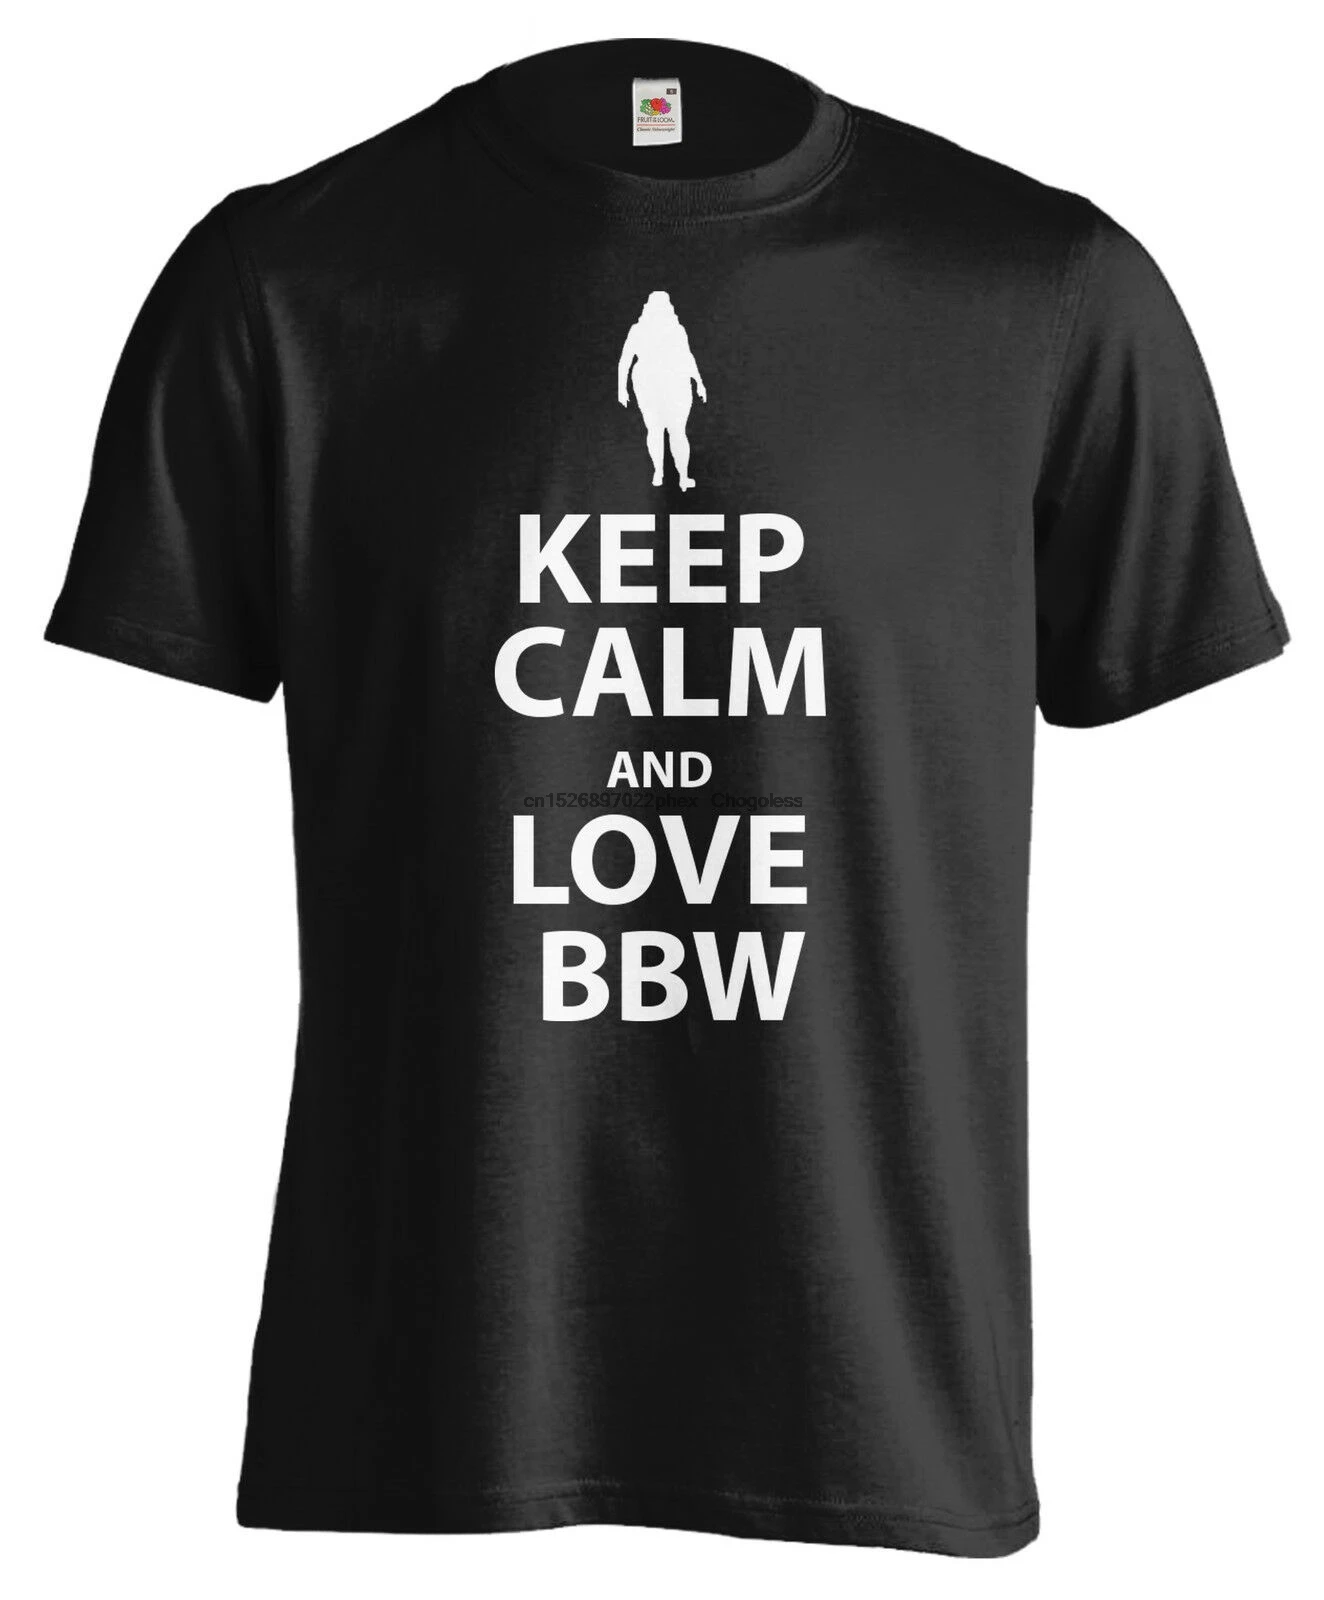 Футболка с надписью Keep Calm and Love BBW 100% крутая забавная модная мужская футболка |